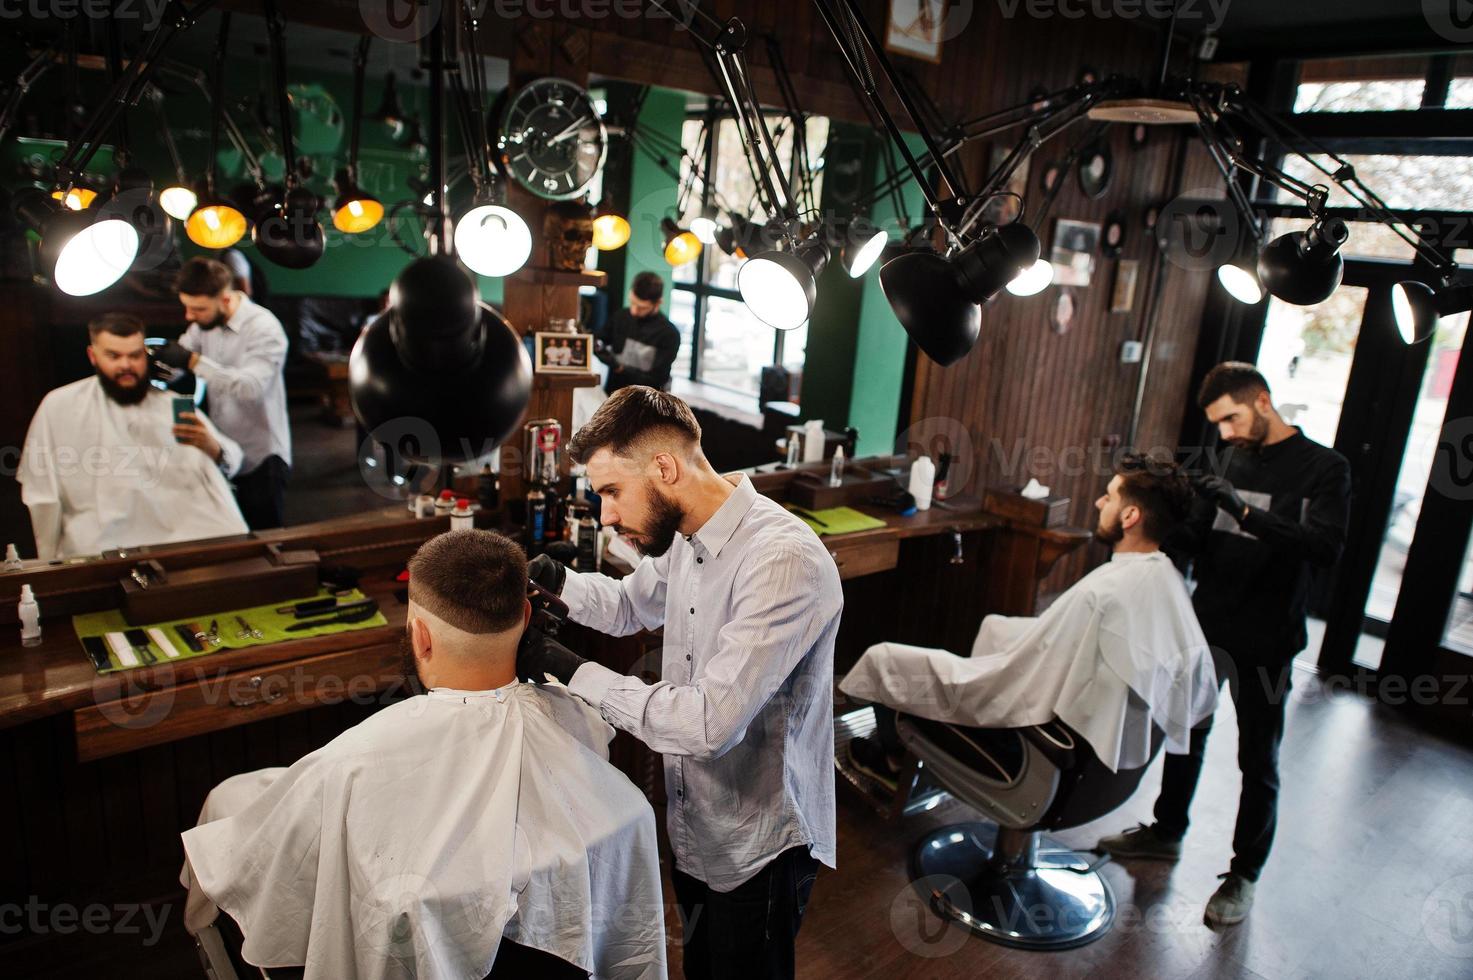 stilig skäggig man på frisersalongen, frisör på jobbet. foto